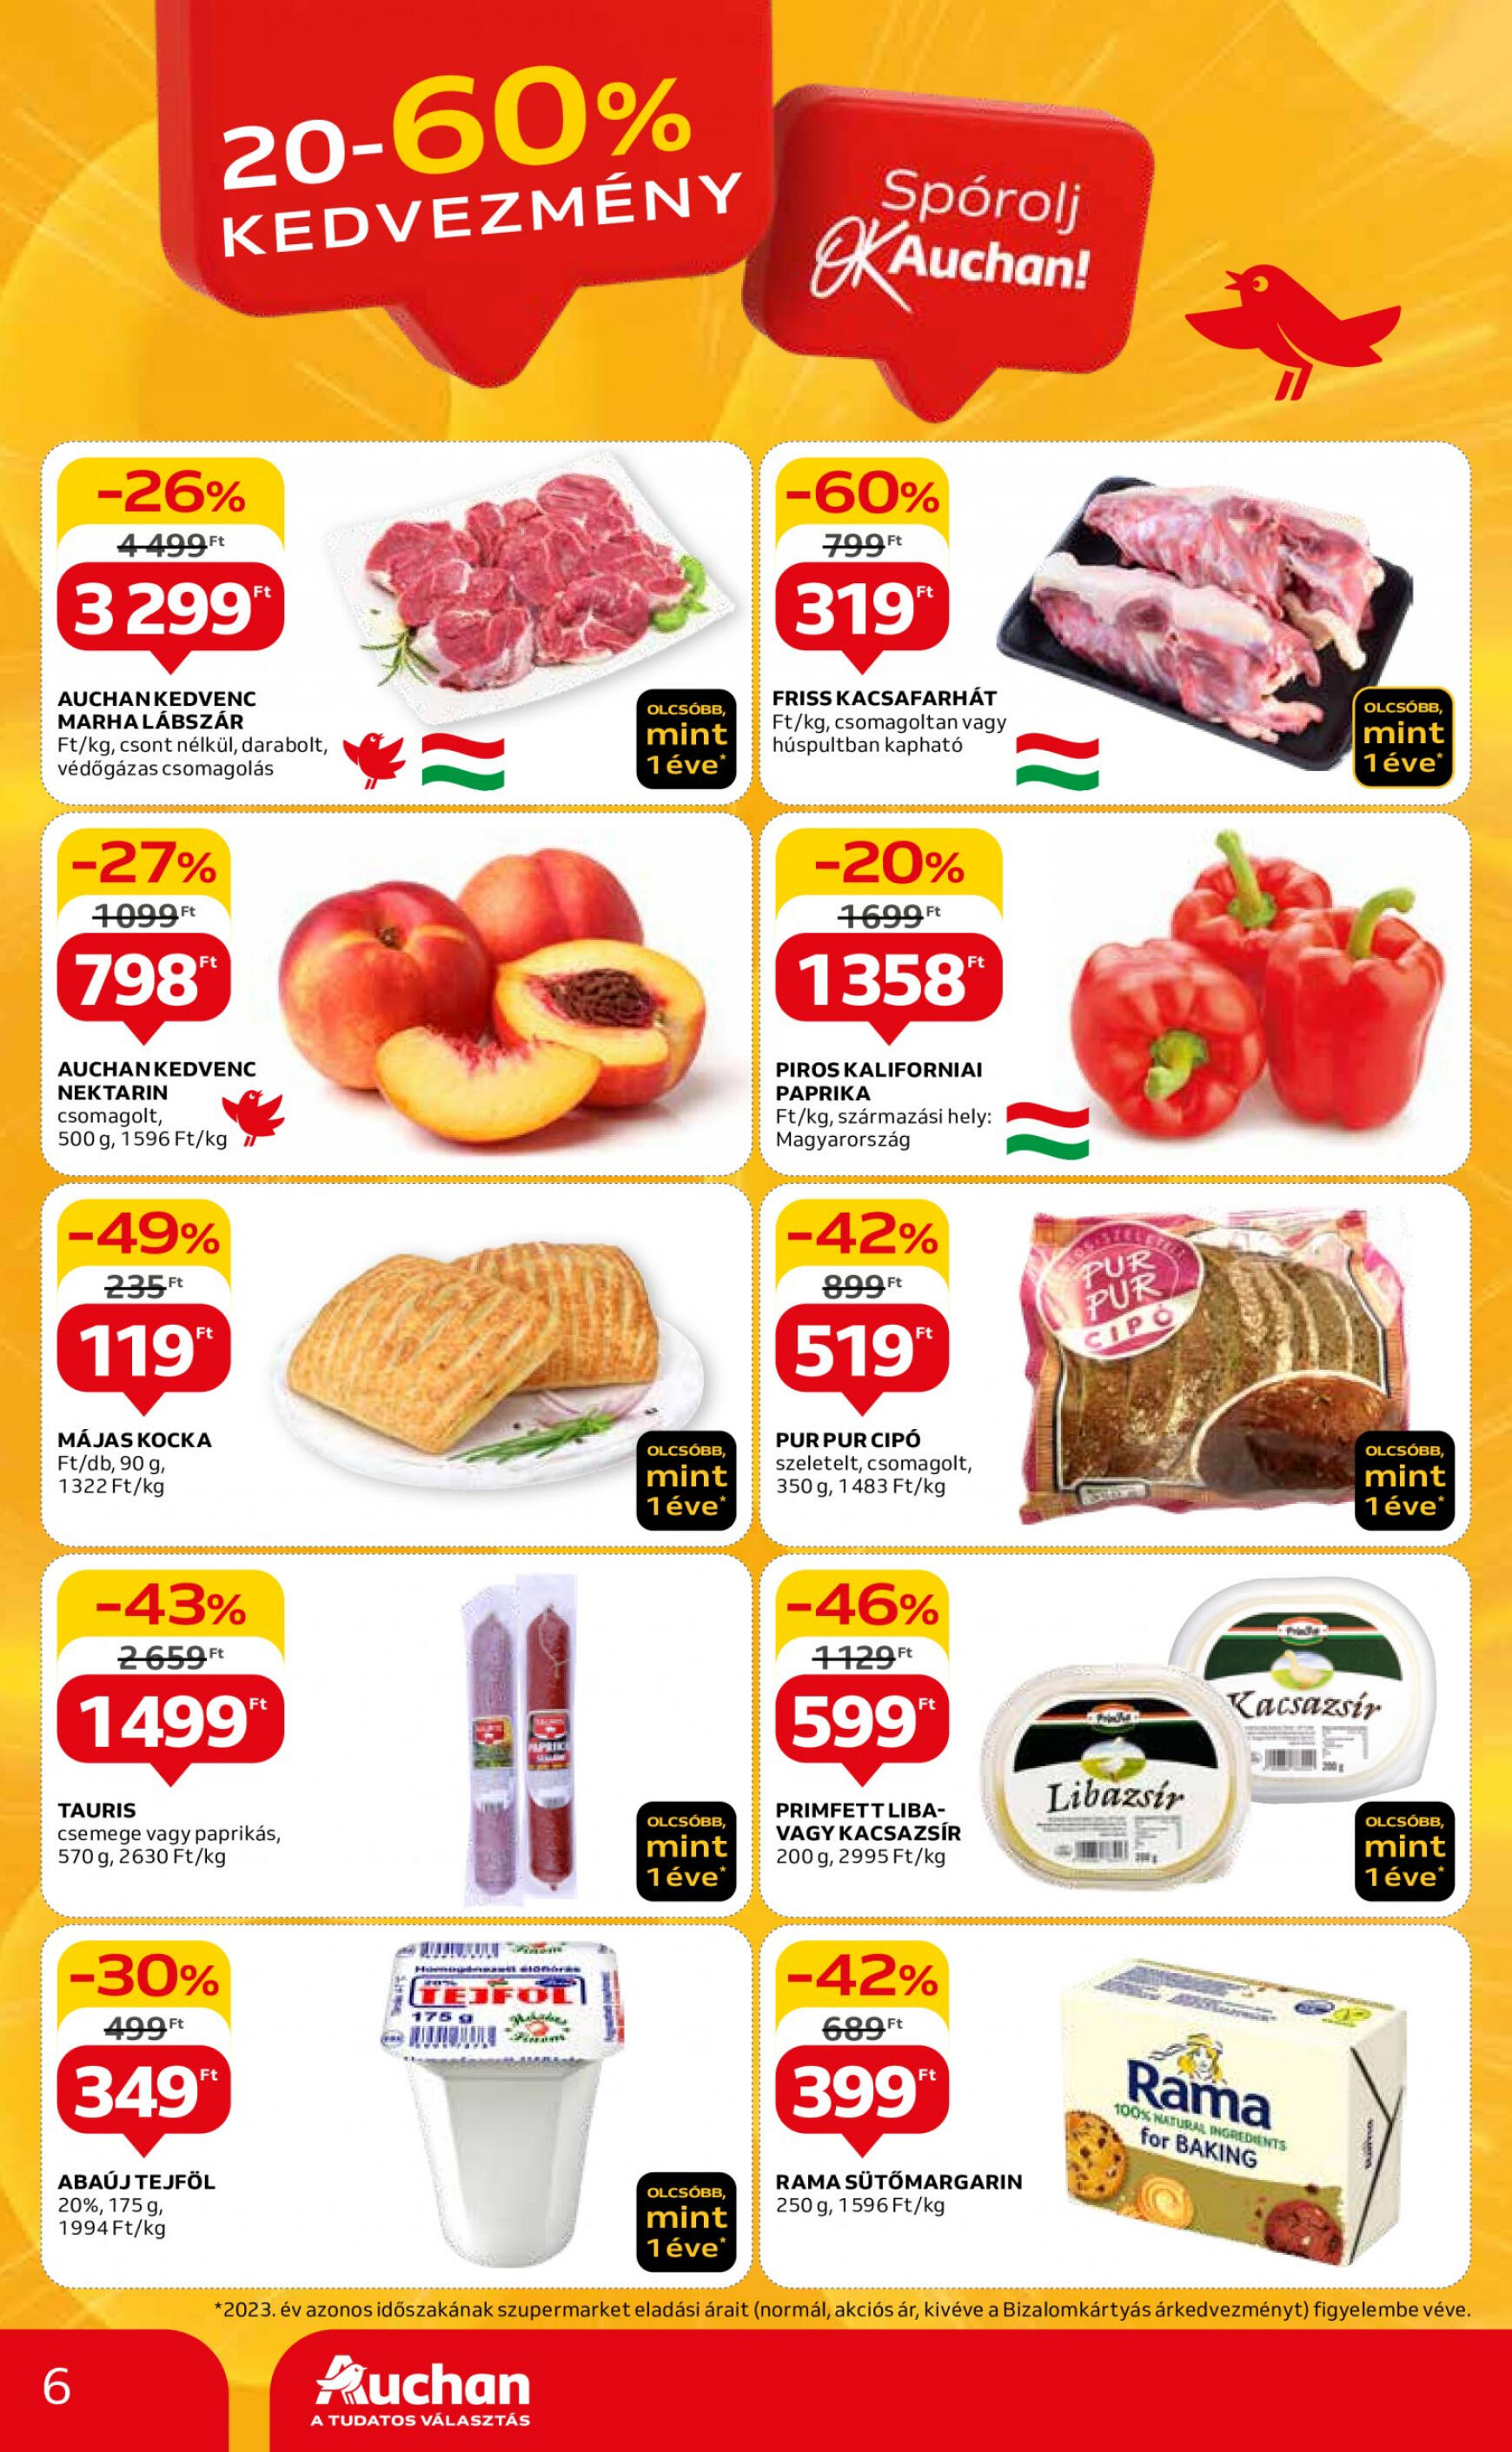 auchan - Aktuális újság Auchan szupermarket 05.16. - 05.22. - page: 6